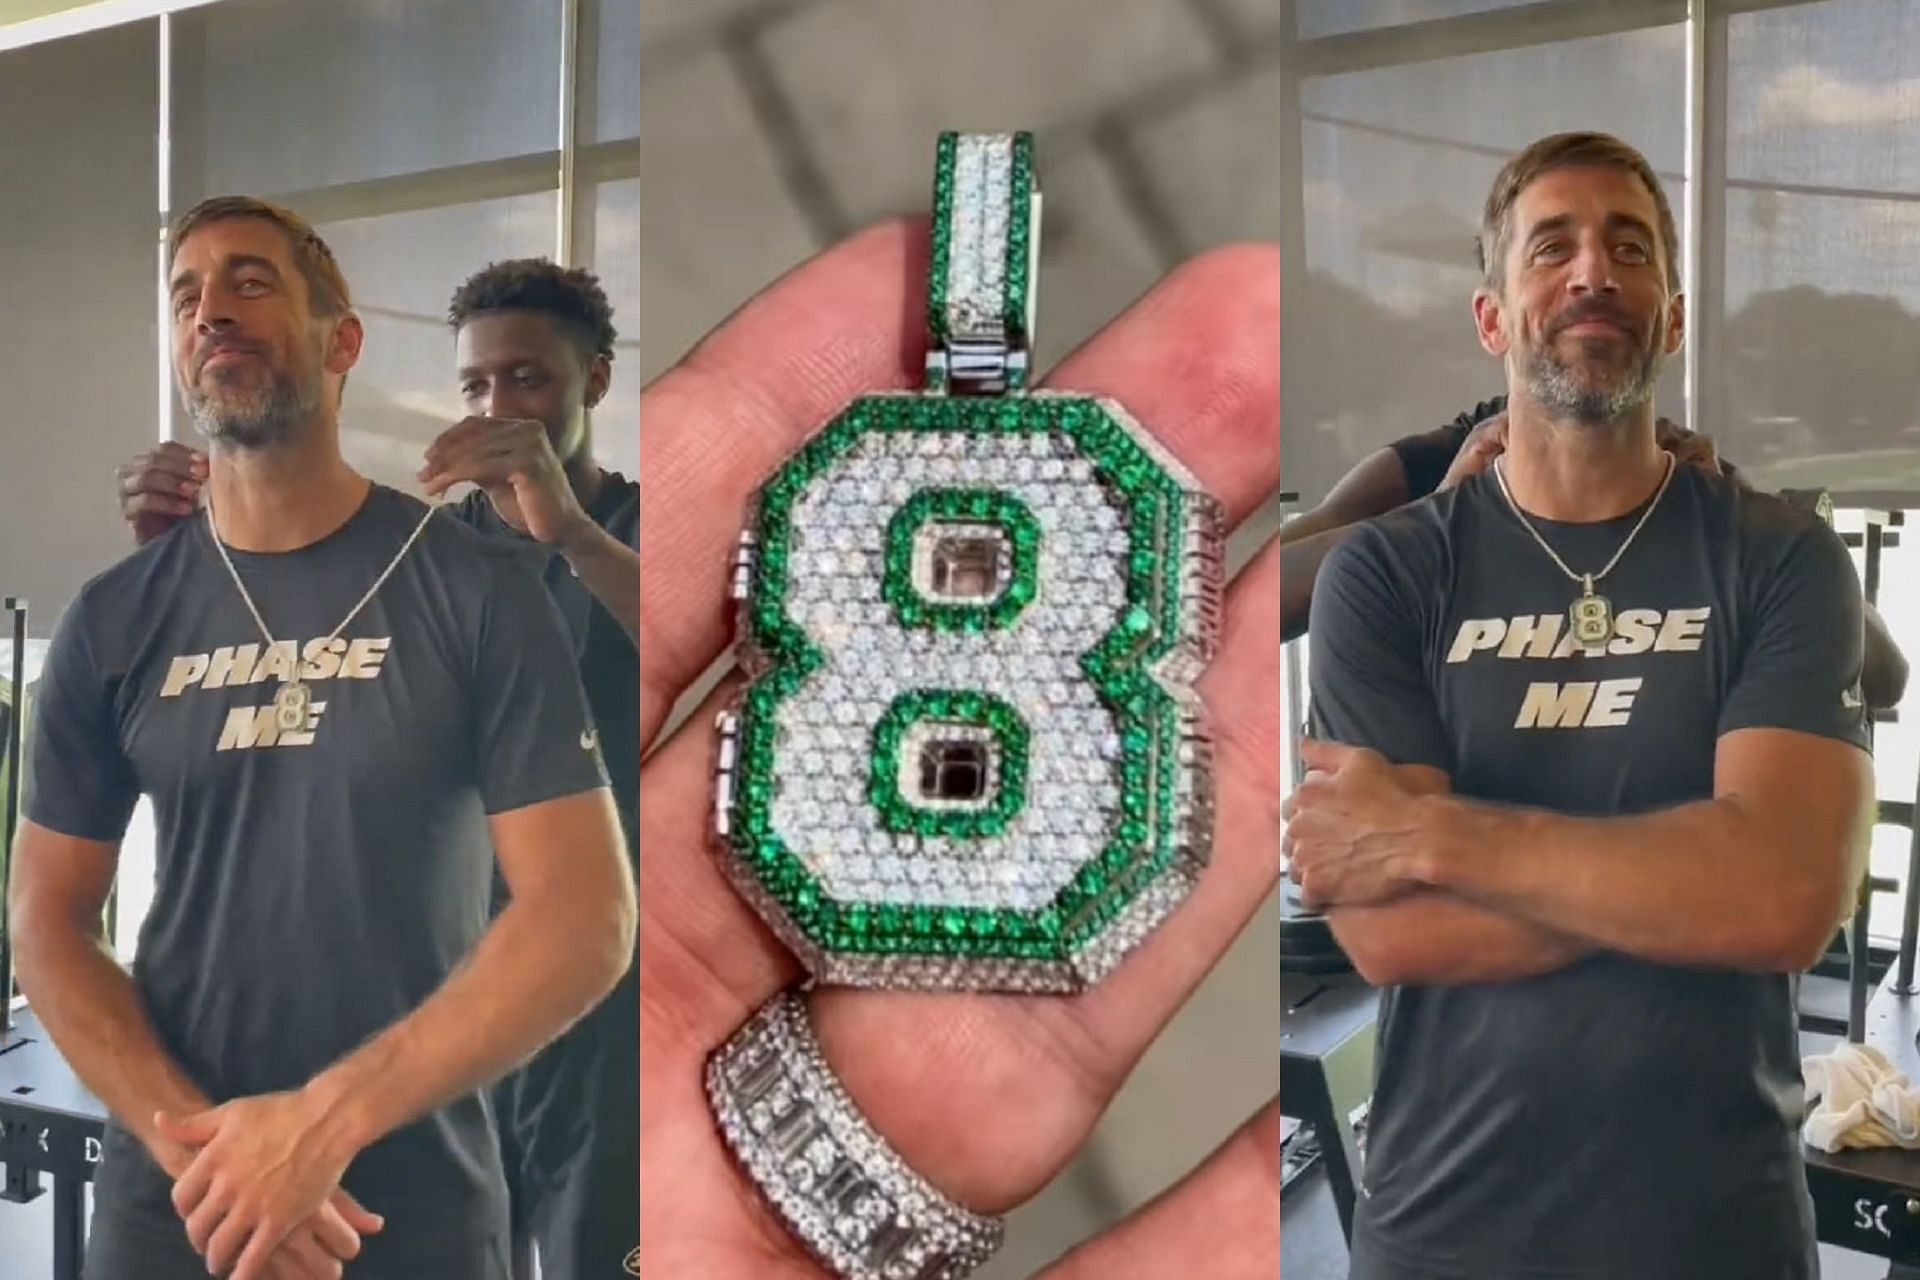 Former Bearcat Gardner gifts new quarterback Rodgers new bling